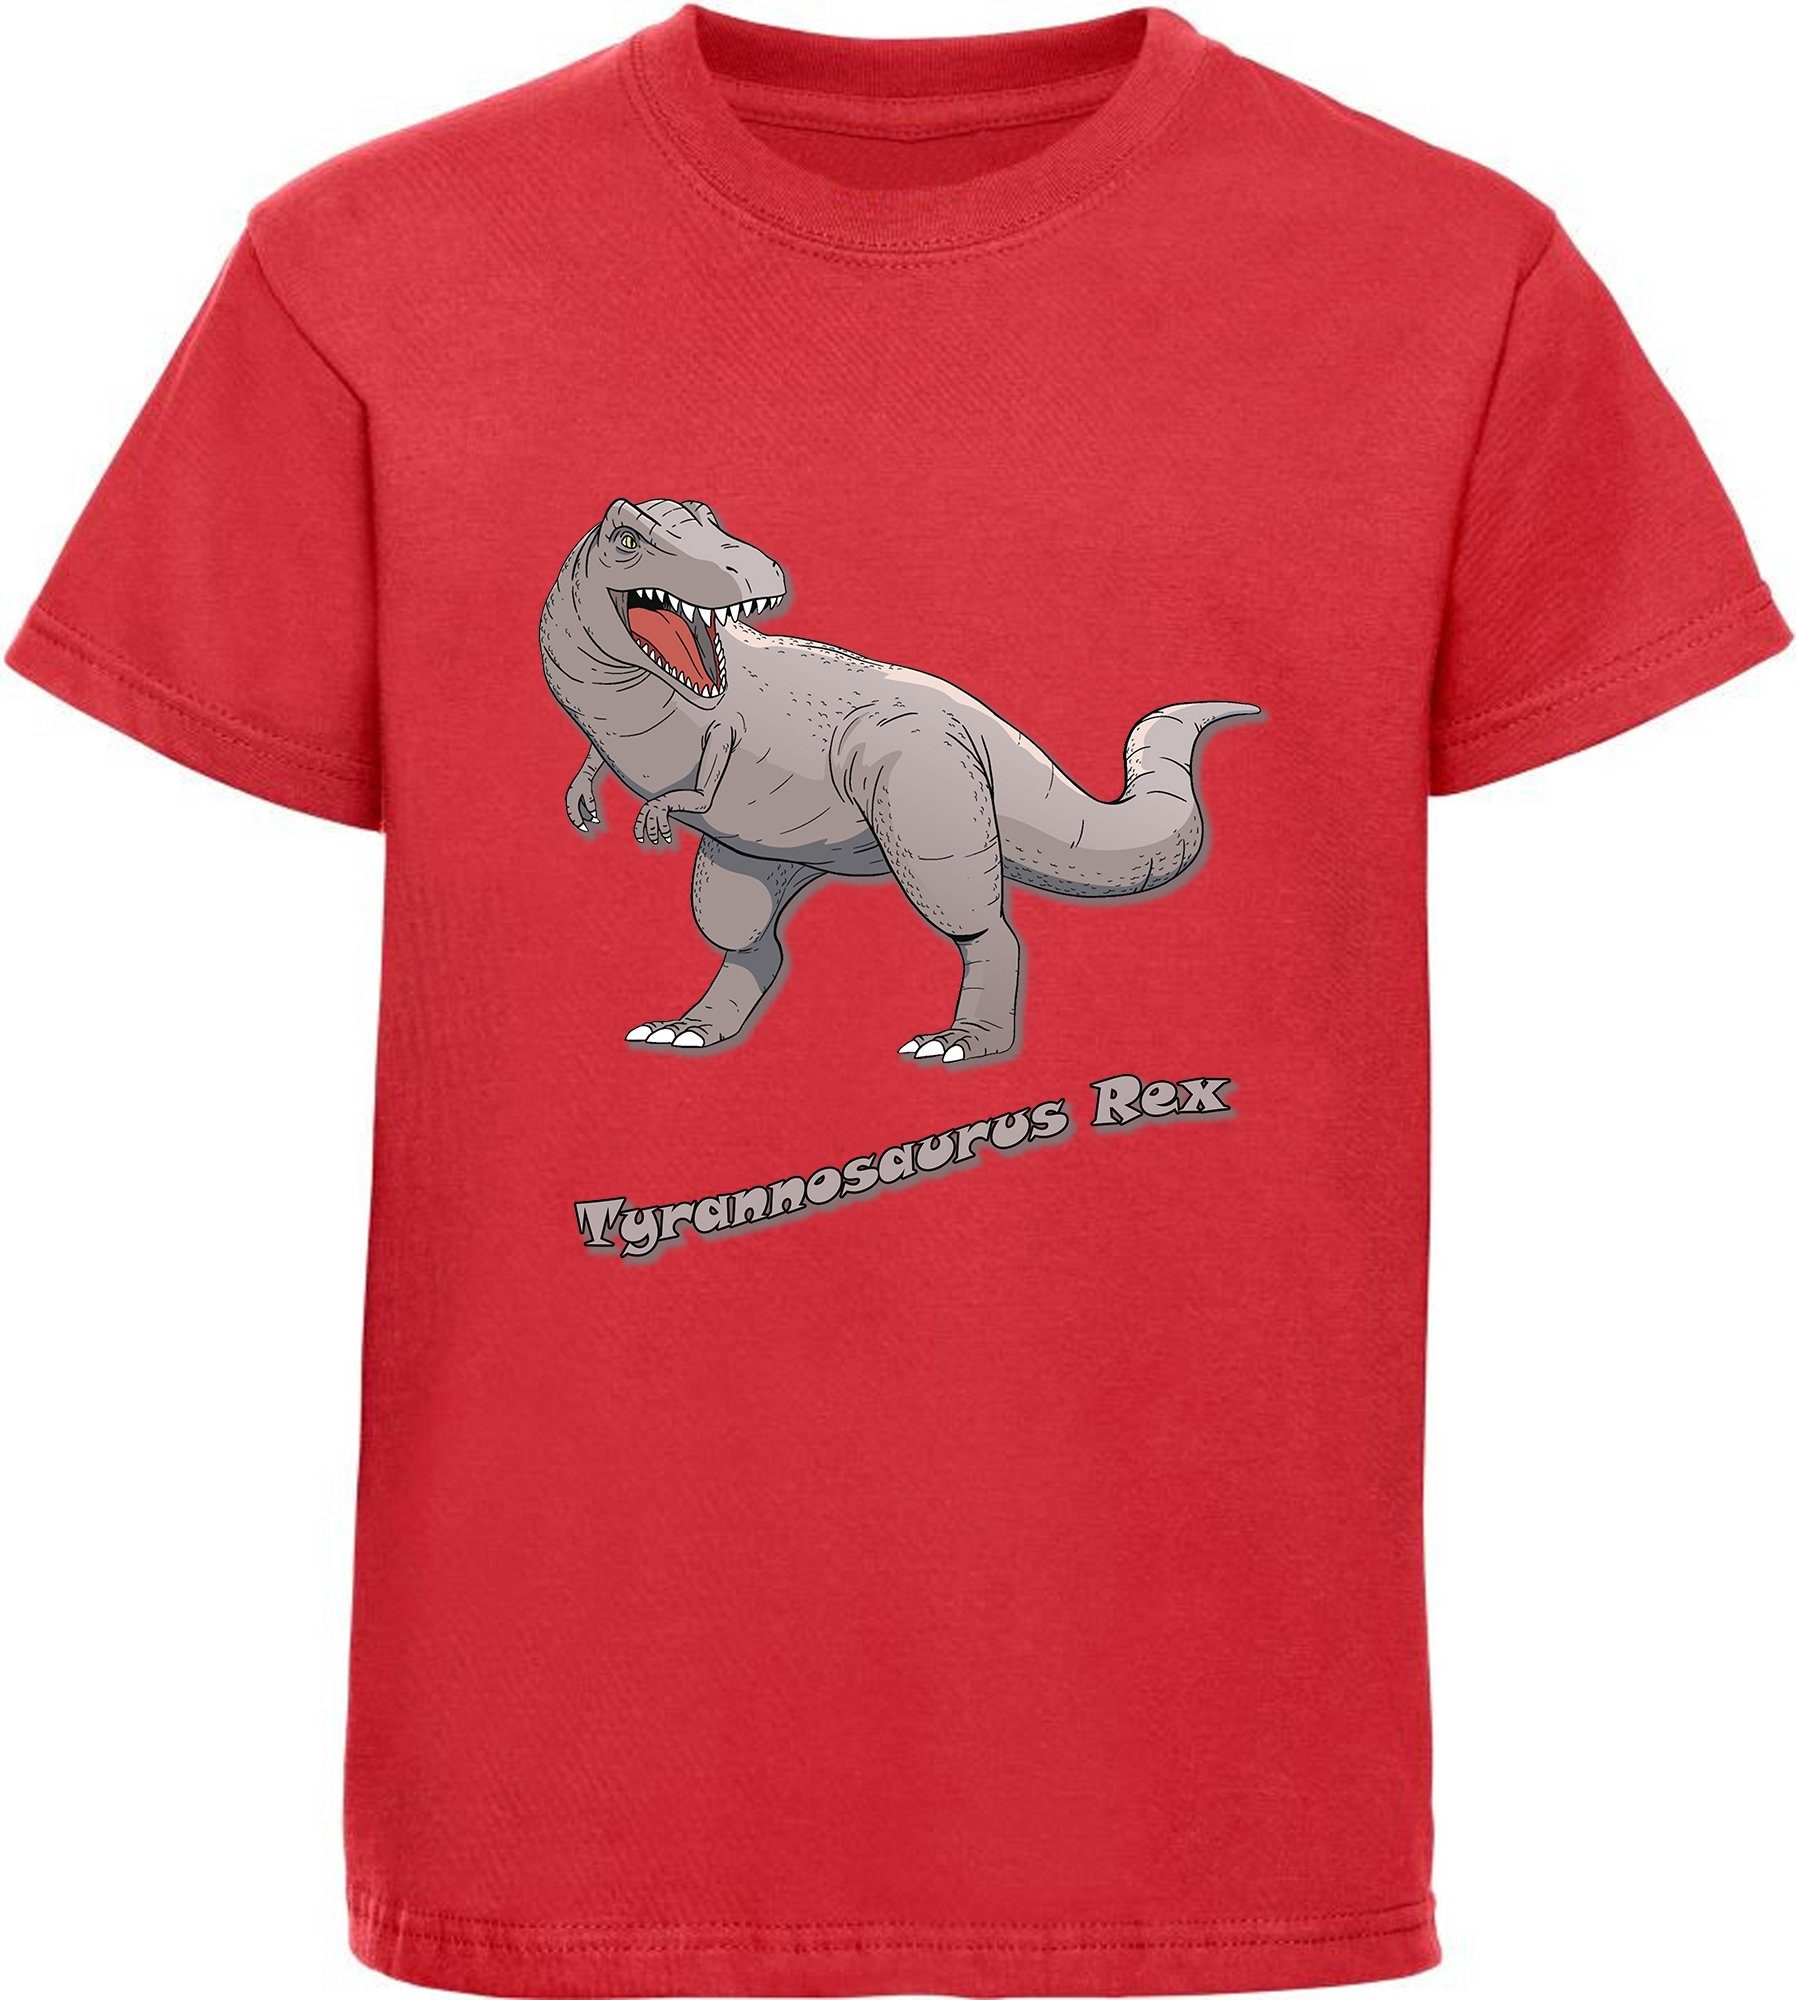 MyDesign24 T-Shirt bedrucktes Kinder T-Shirt mit Tyrannosaurus Rex 100%  Baumwolle mit Dino Aufdruck, rot i53